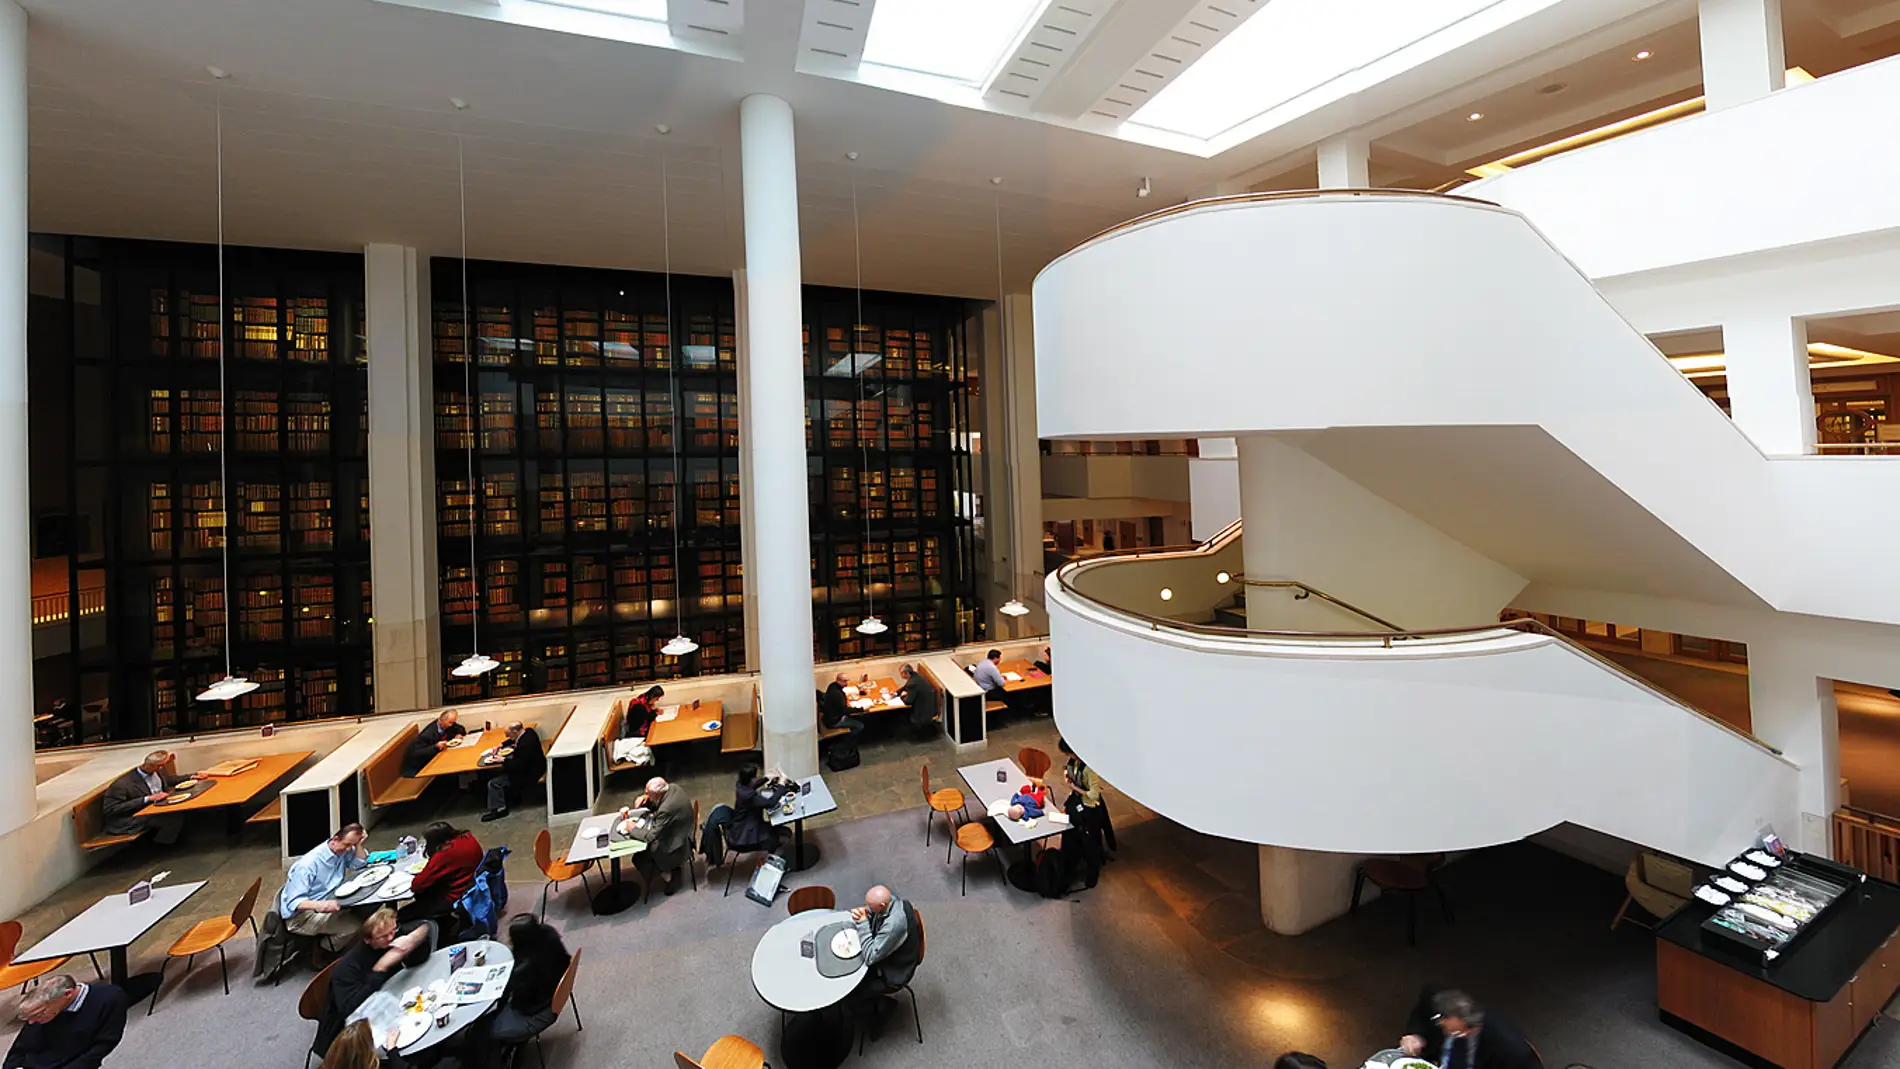 Библ библиотека. Библиотека британского музея в Лондоне. Национальная библиотека Лондона. Читальный зал британского музея. Национальная библиотека Великобритании книгохранилище.